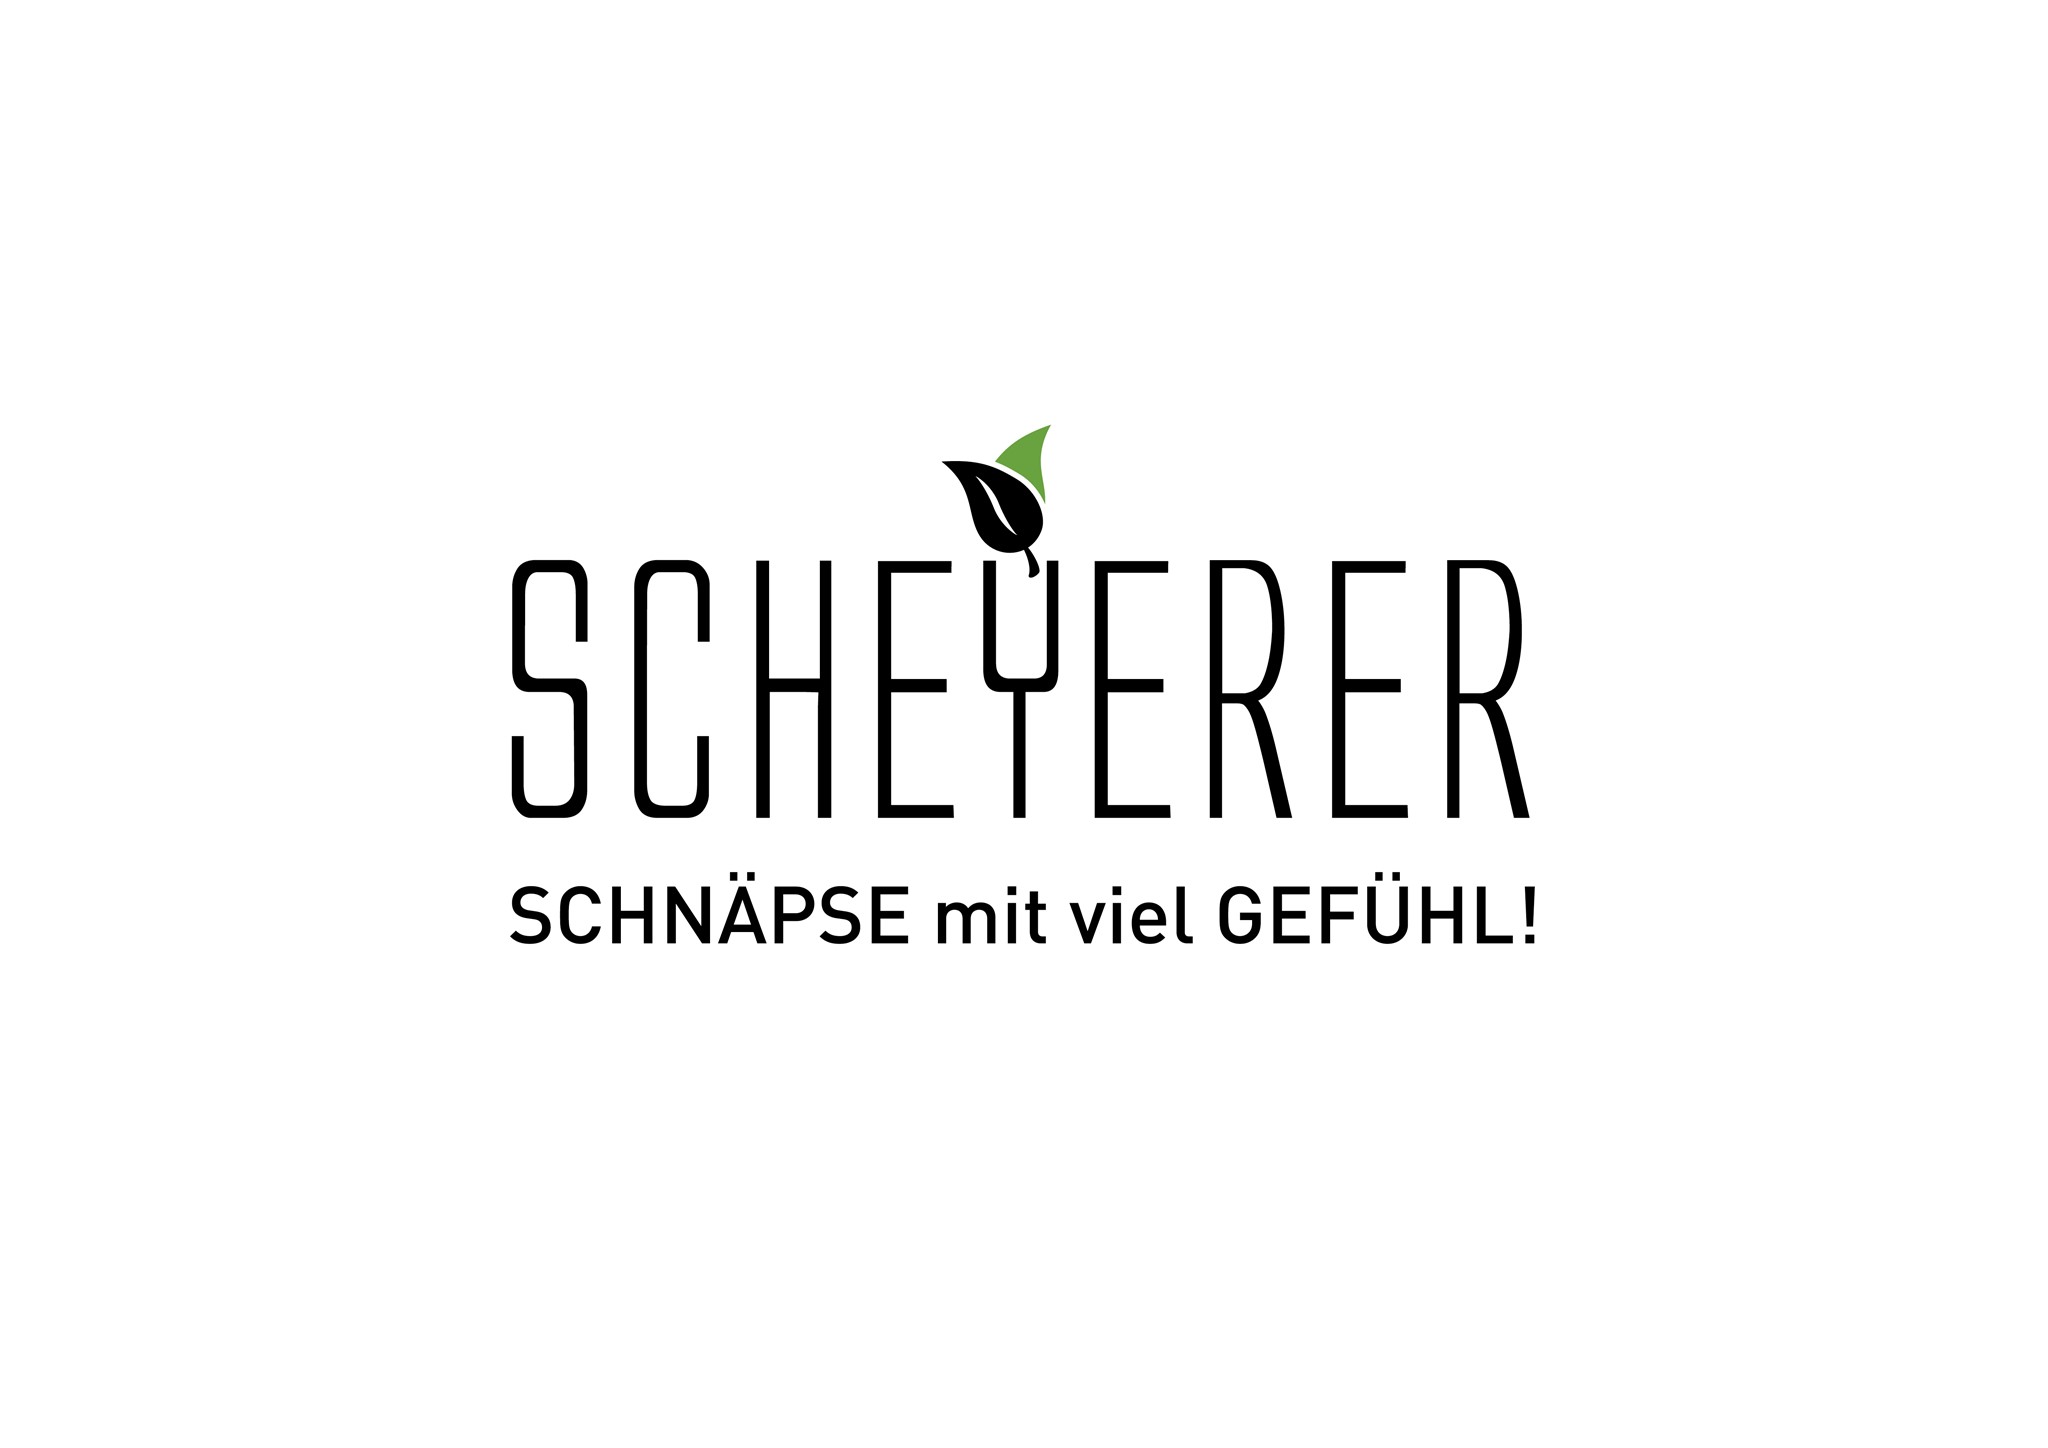 Bild für Kategorie Scheyerer Schnäpse in 0,5 Liter und 0,35 Liter